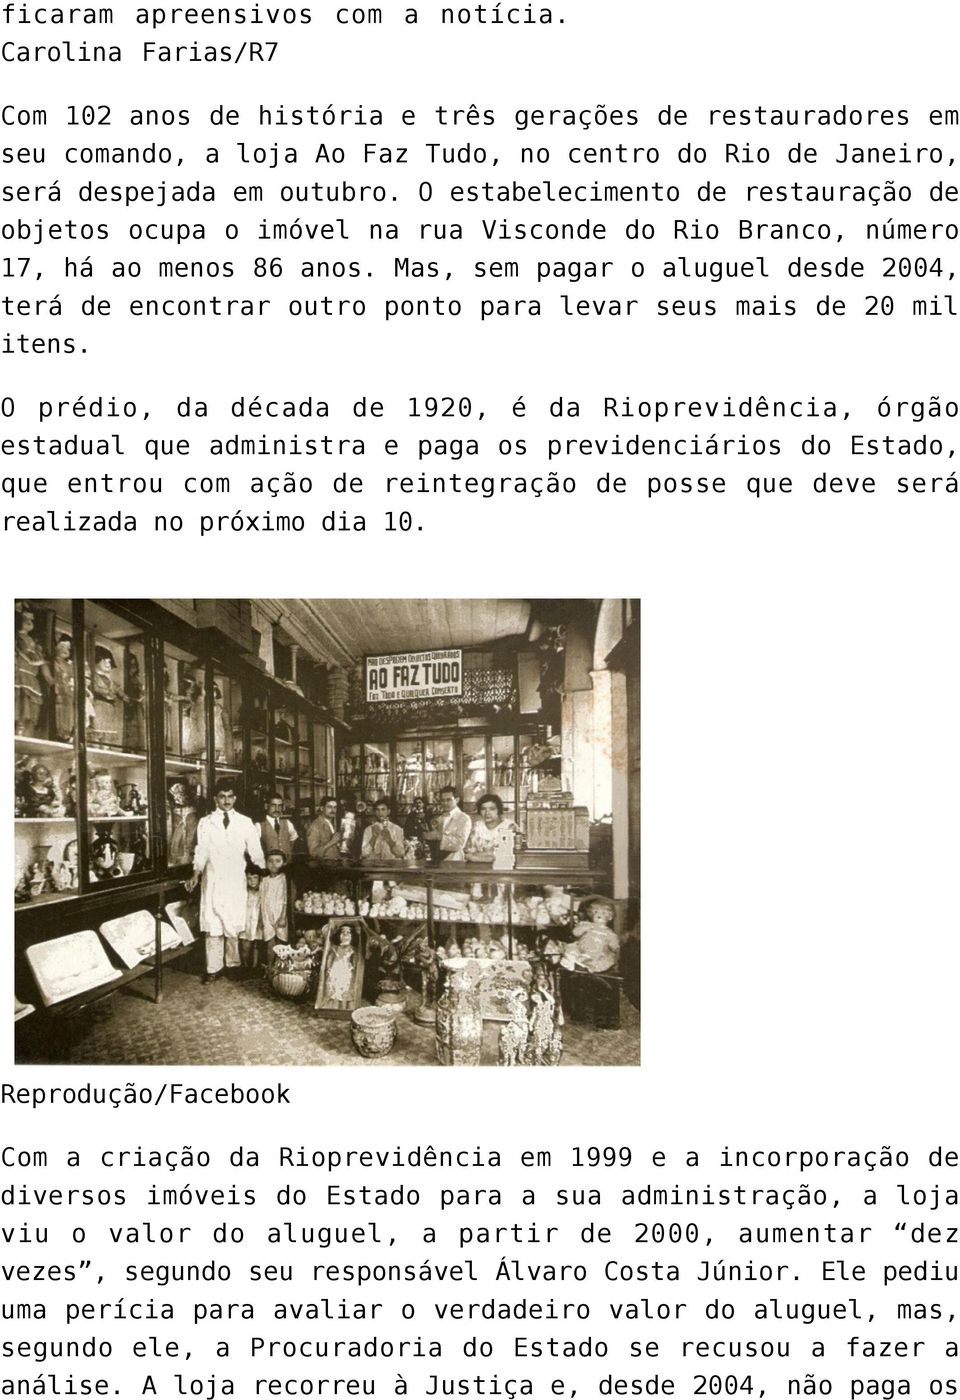 O estabelecimento de restauração de objetos ocupa o imóvel na rua Visconde do Rio Branco, número 17, há ao menos 86 anos.